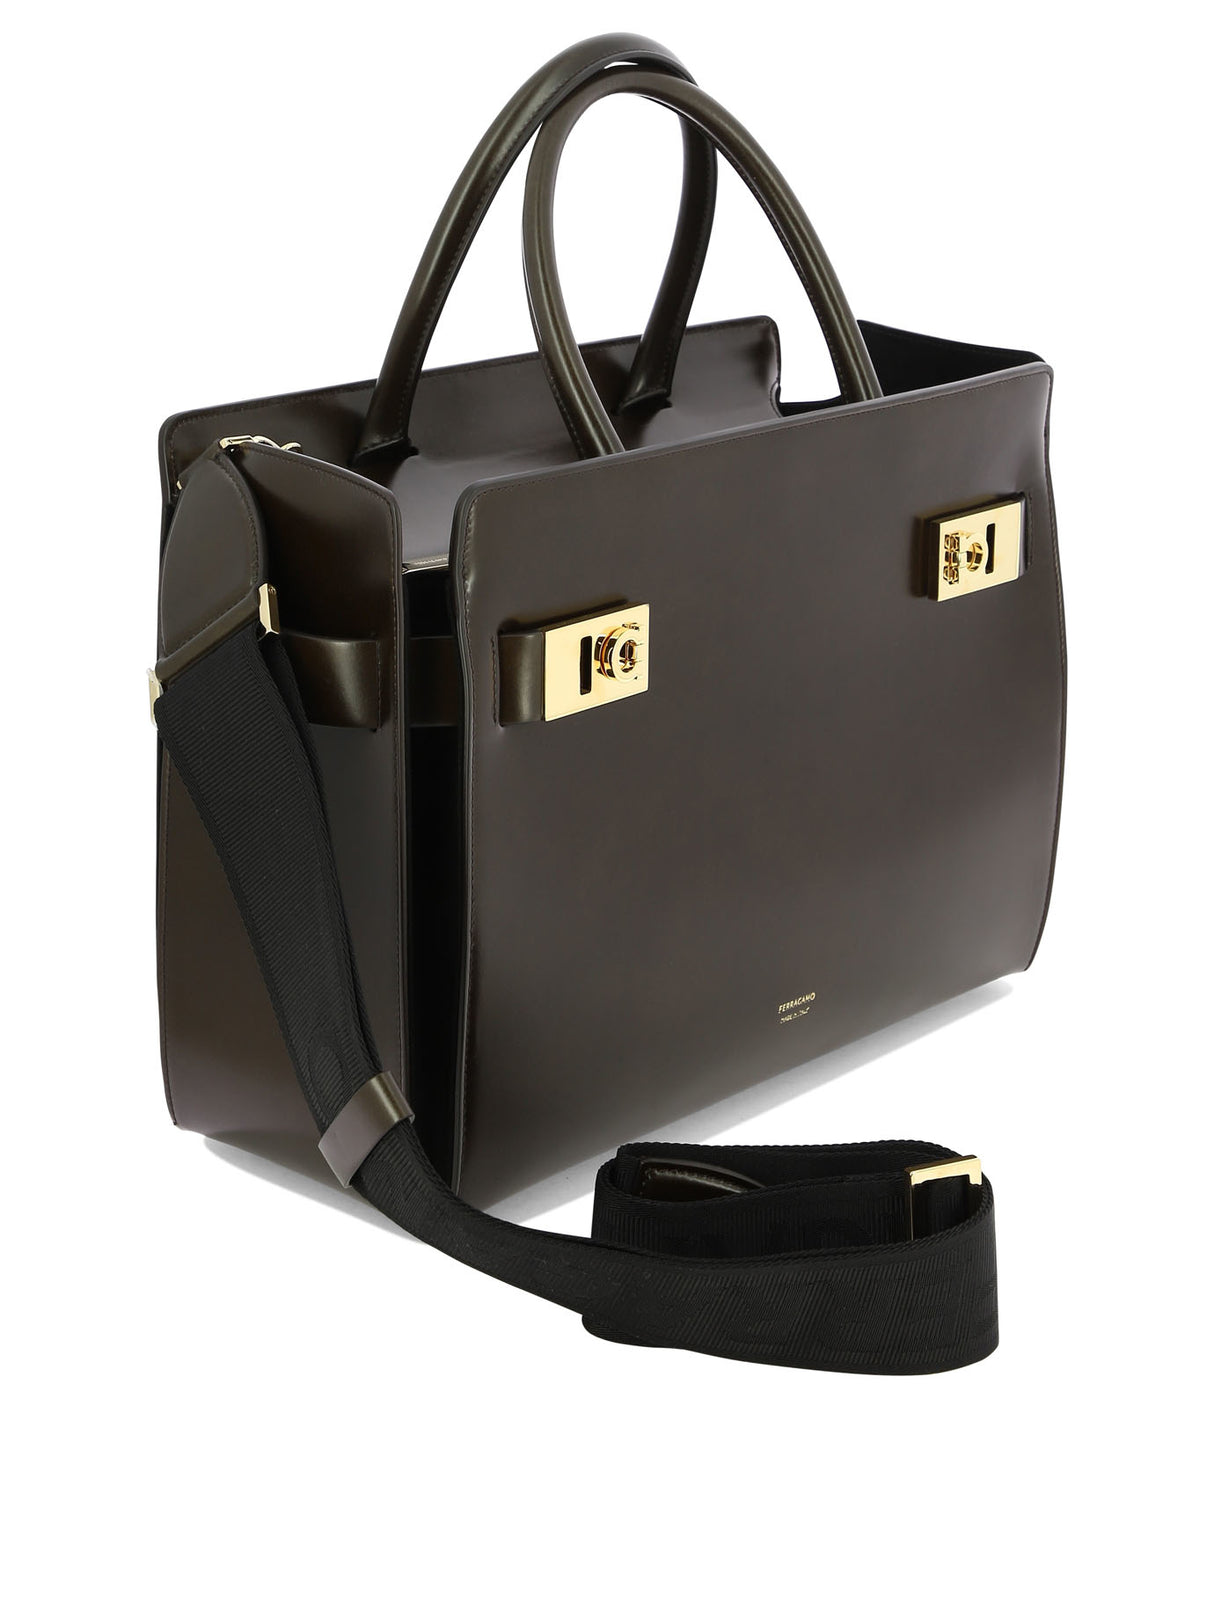 Túi xách da cao cấp màu nâu sang trọng cho phụ nữ - Bộ sưu tập FW23